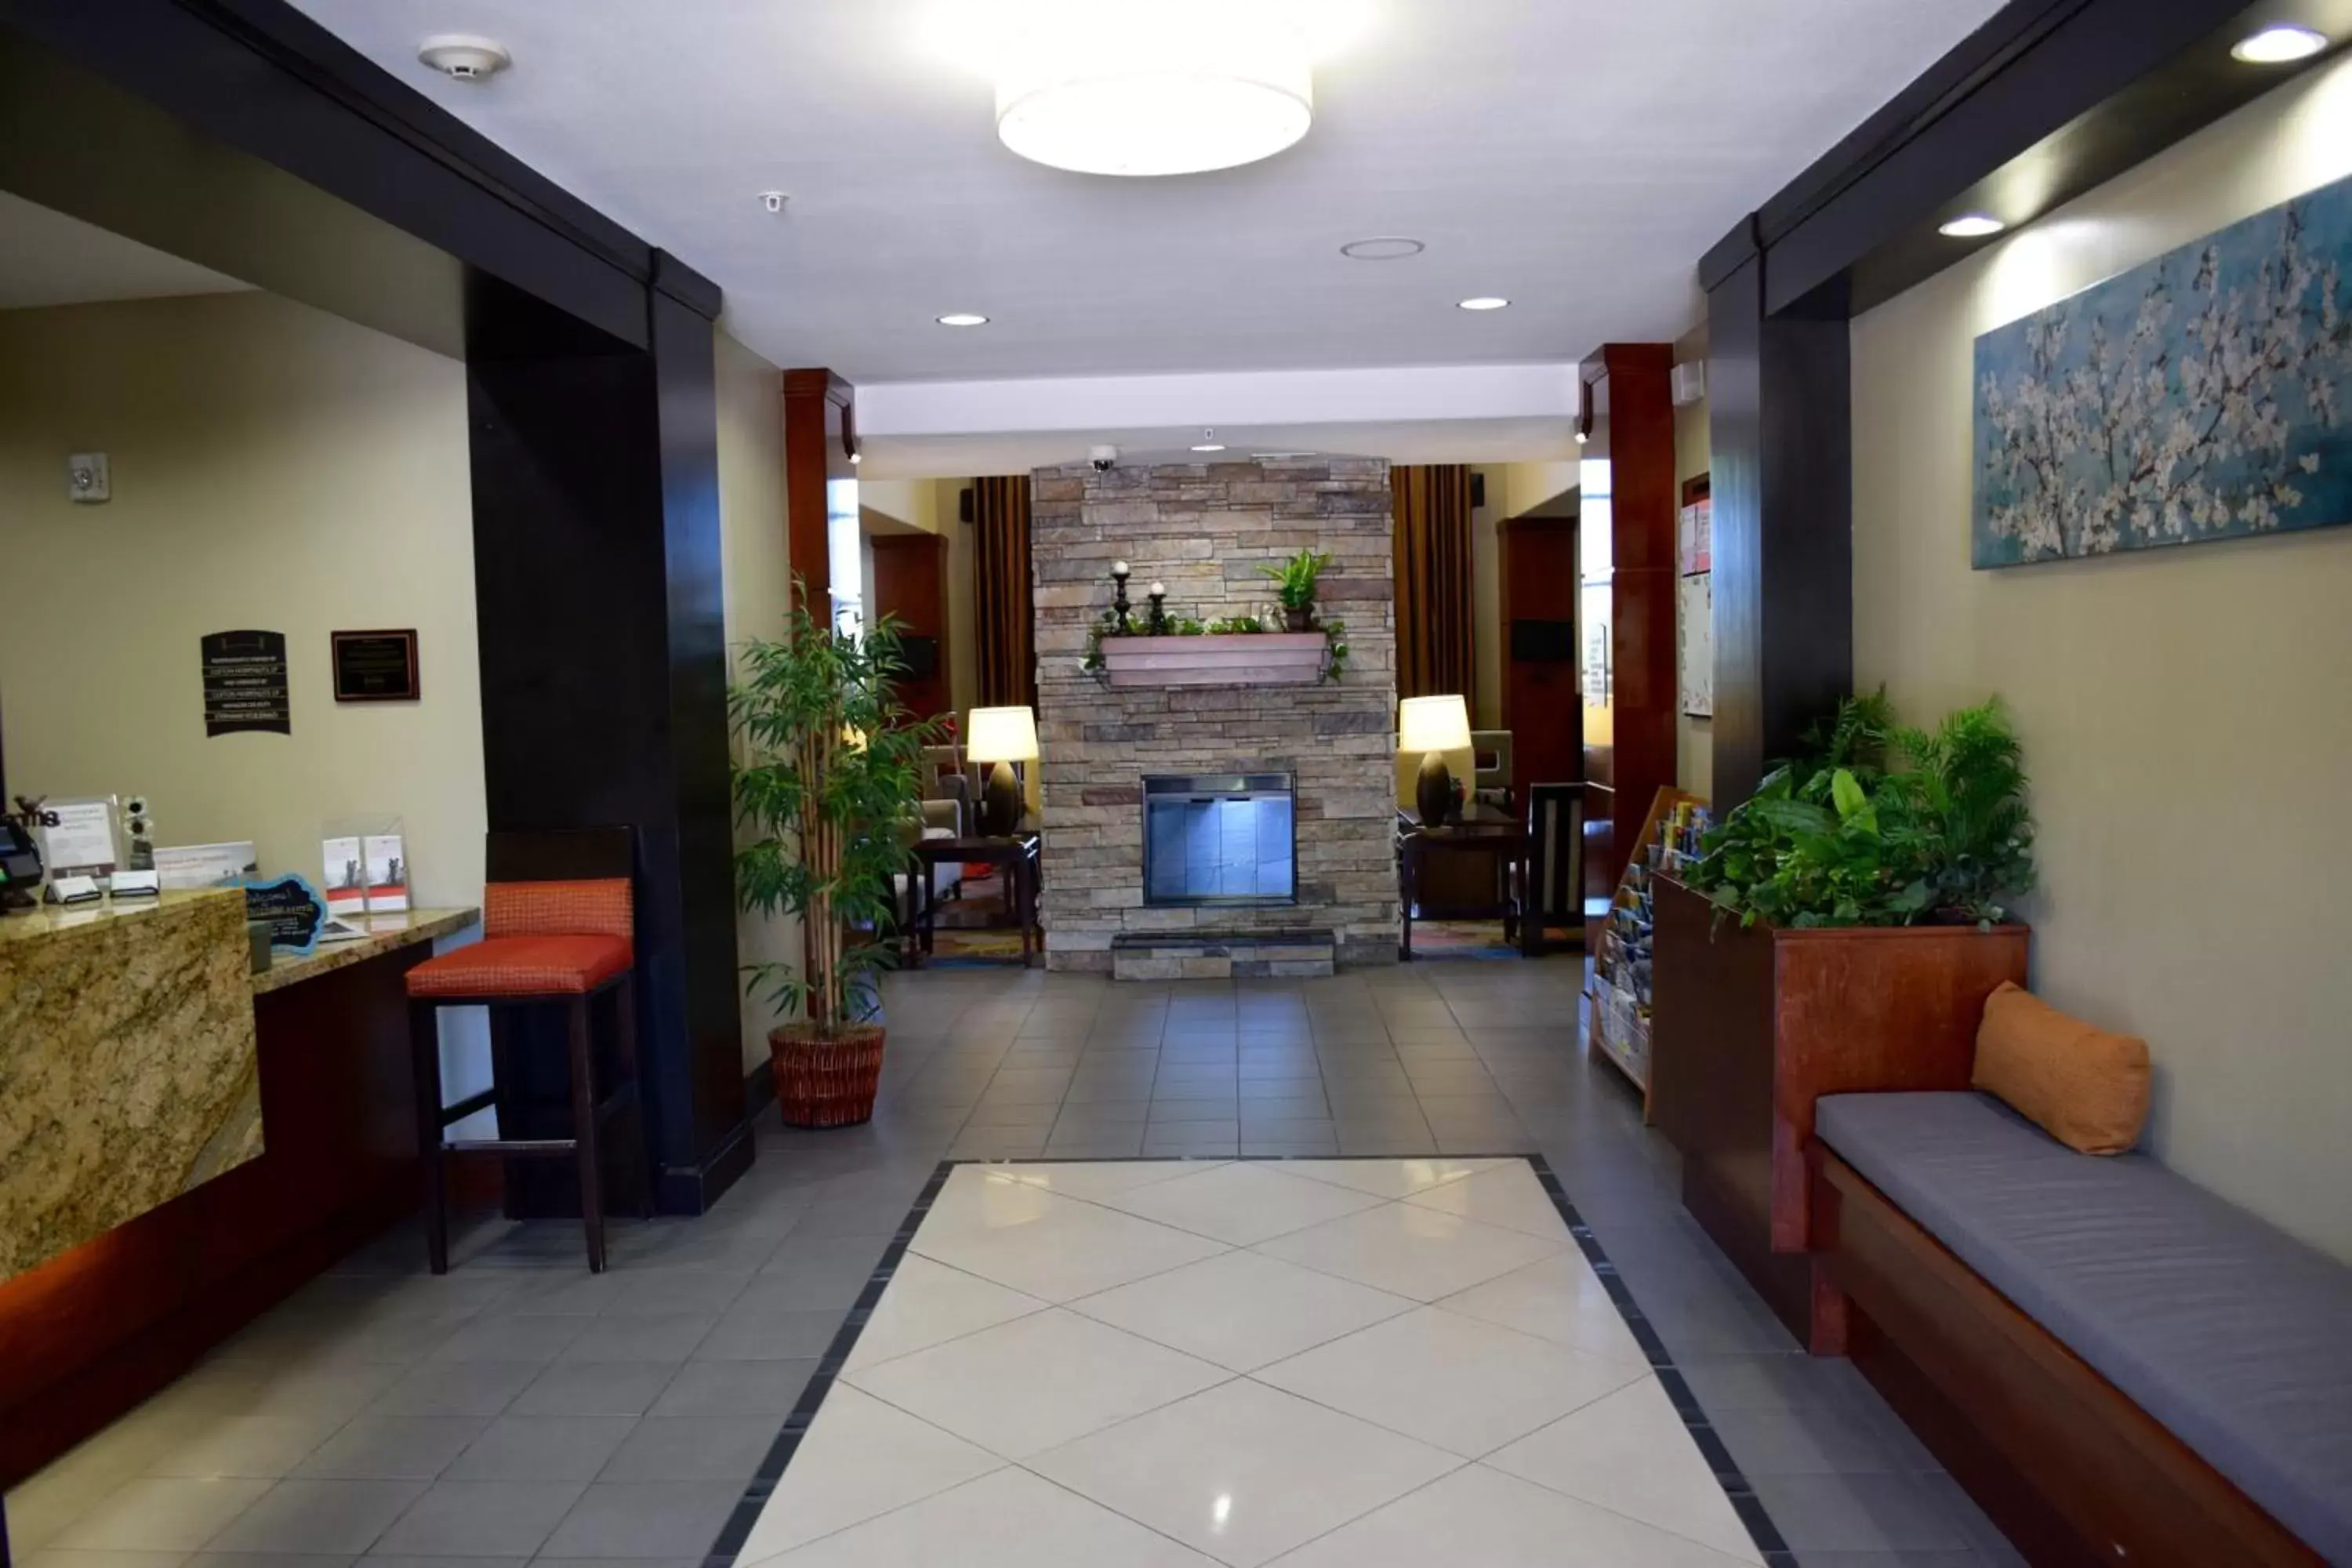 Lobby or reception, Lobby/Reception in Staybridge Suites Houston Stafford - Sugar Land, an IHG Hotel